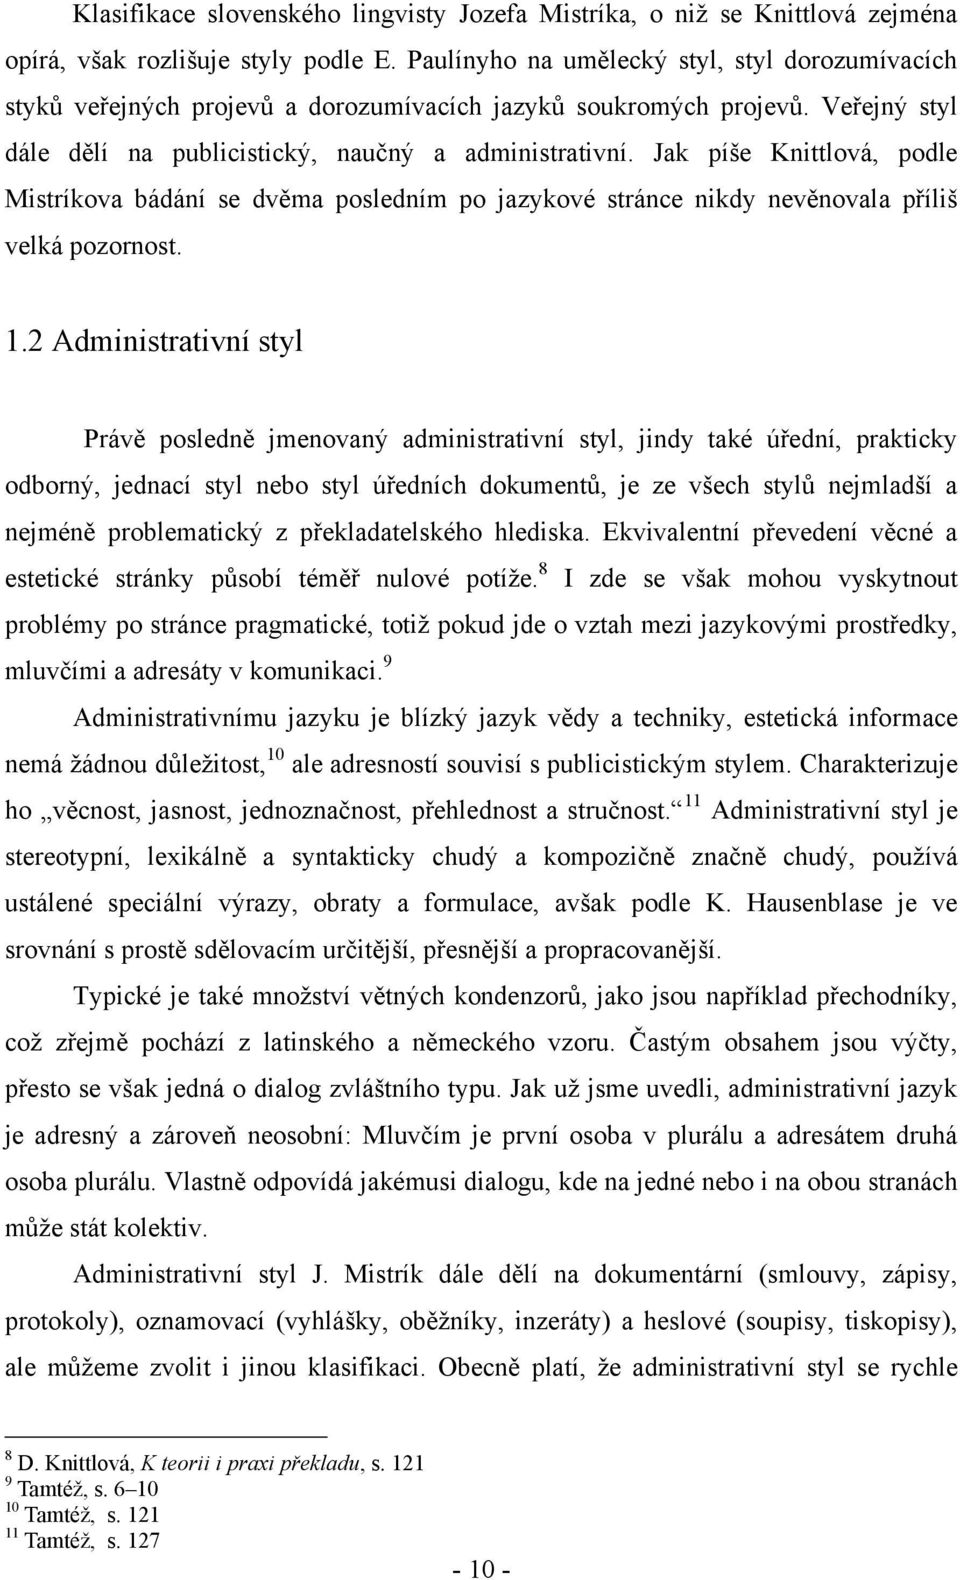 Komentovaný překlad odborného textu: Vybrané články Občanského zákoníku  Ruské federace - PDF Stažení zdarma